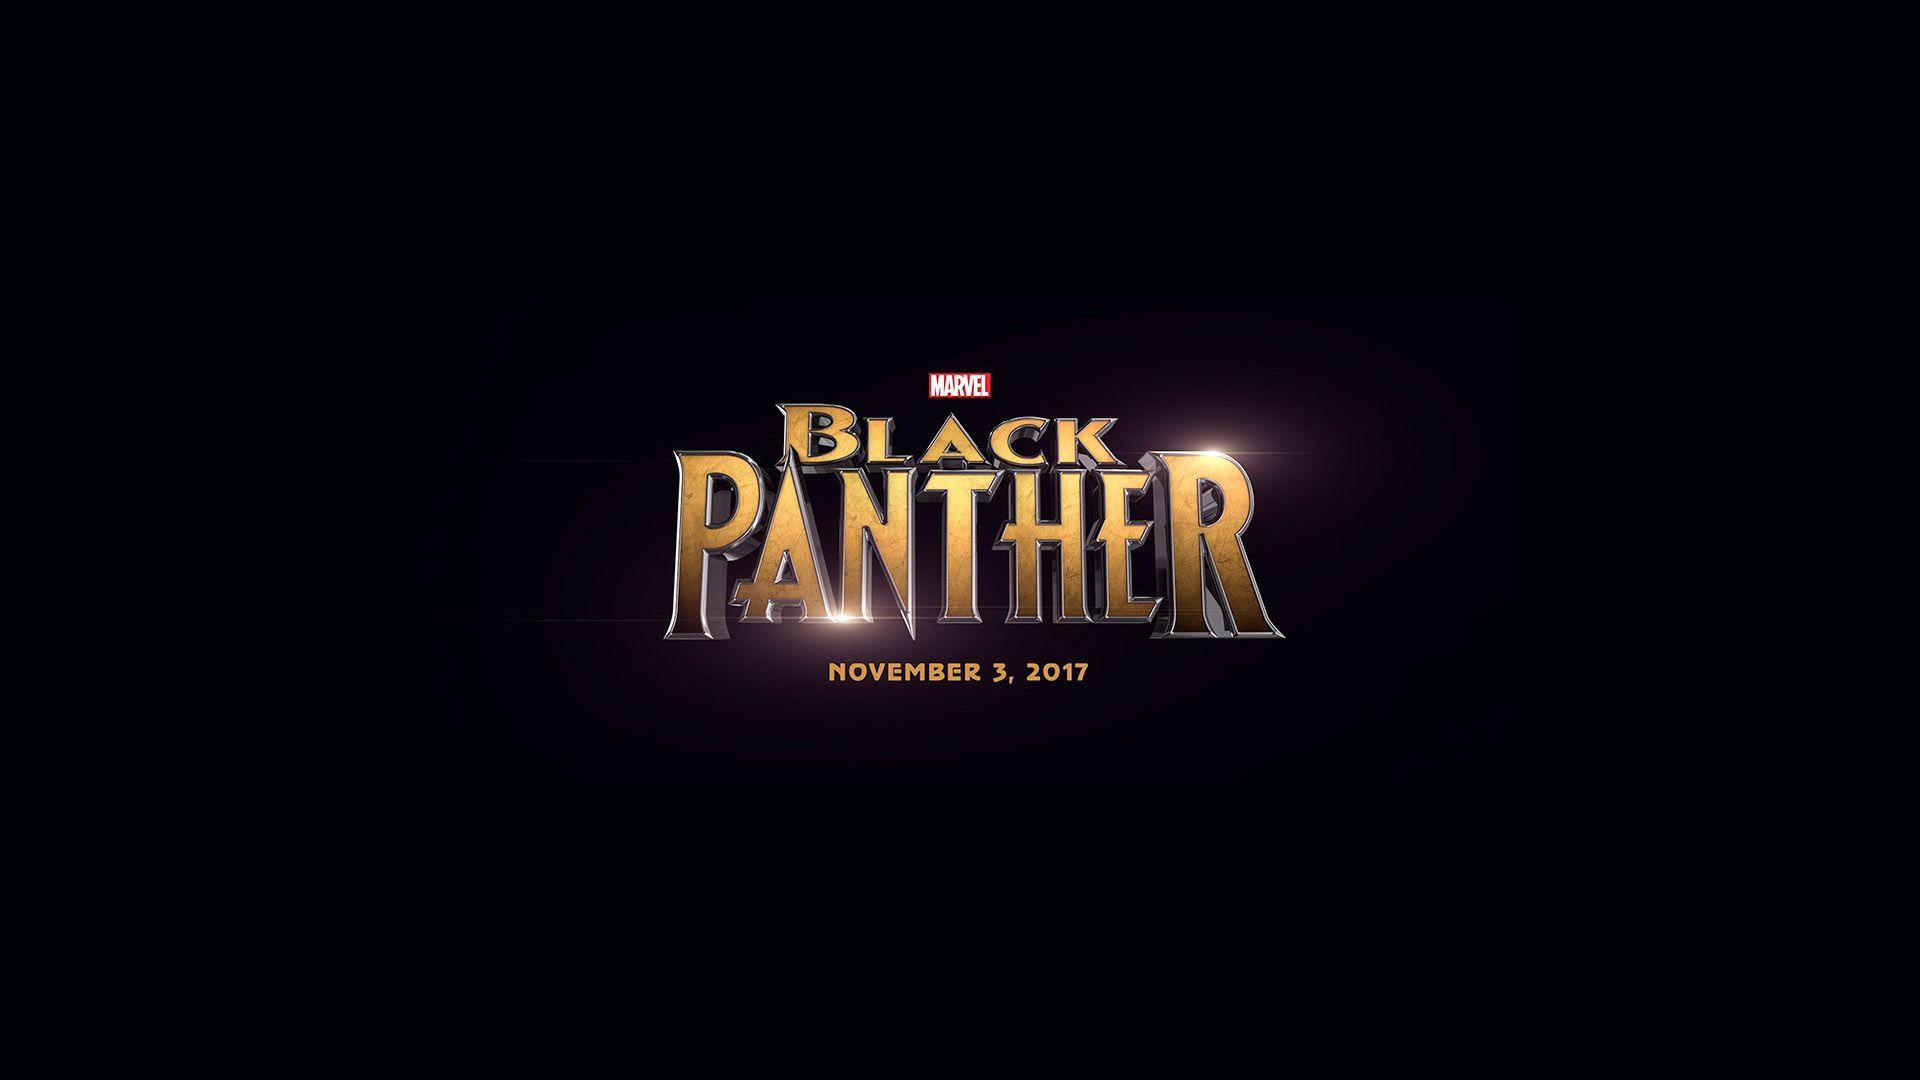 Black Panther 2017 Movie Logo Wallpaper free desktop background